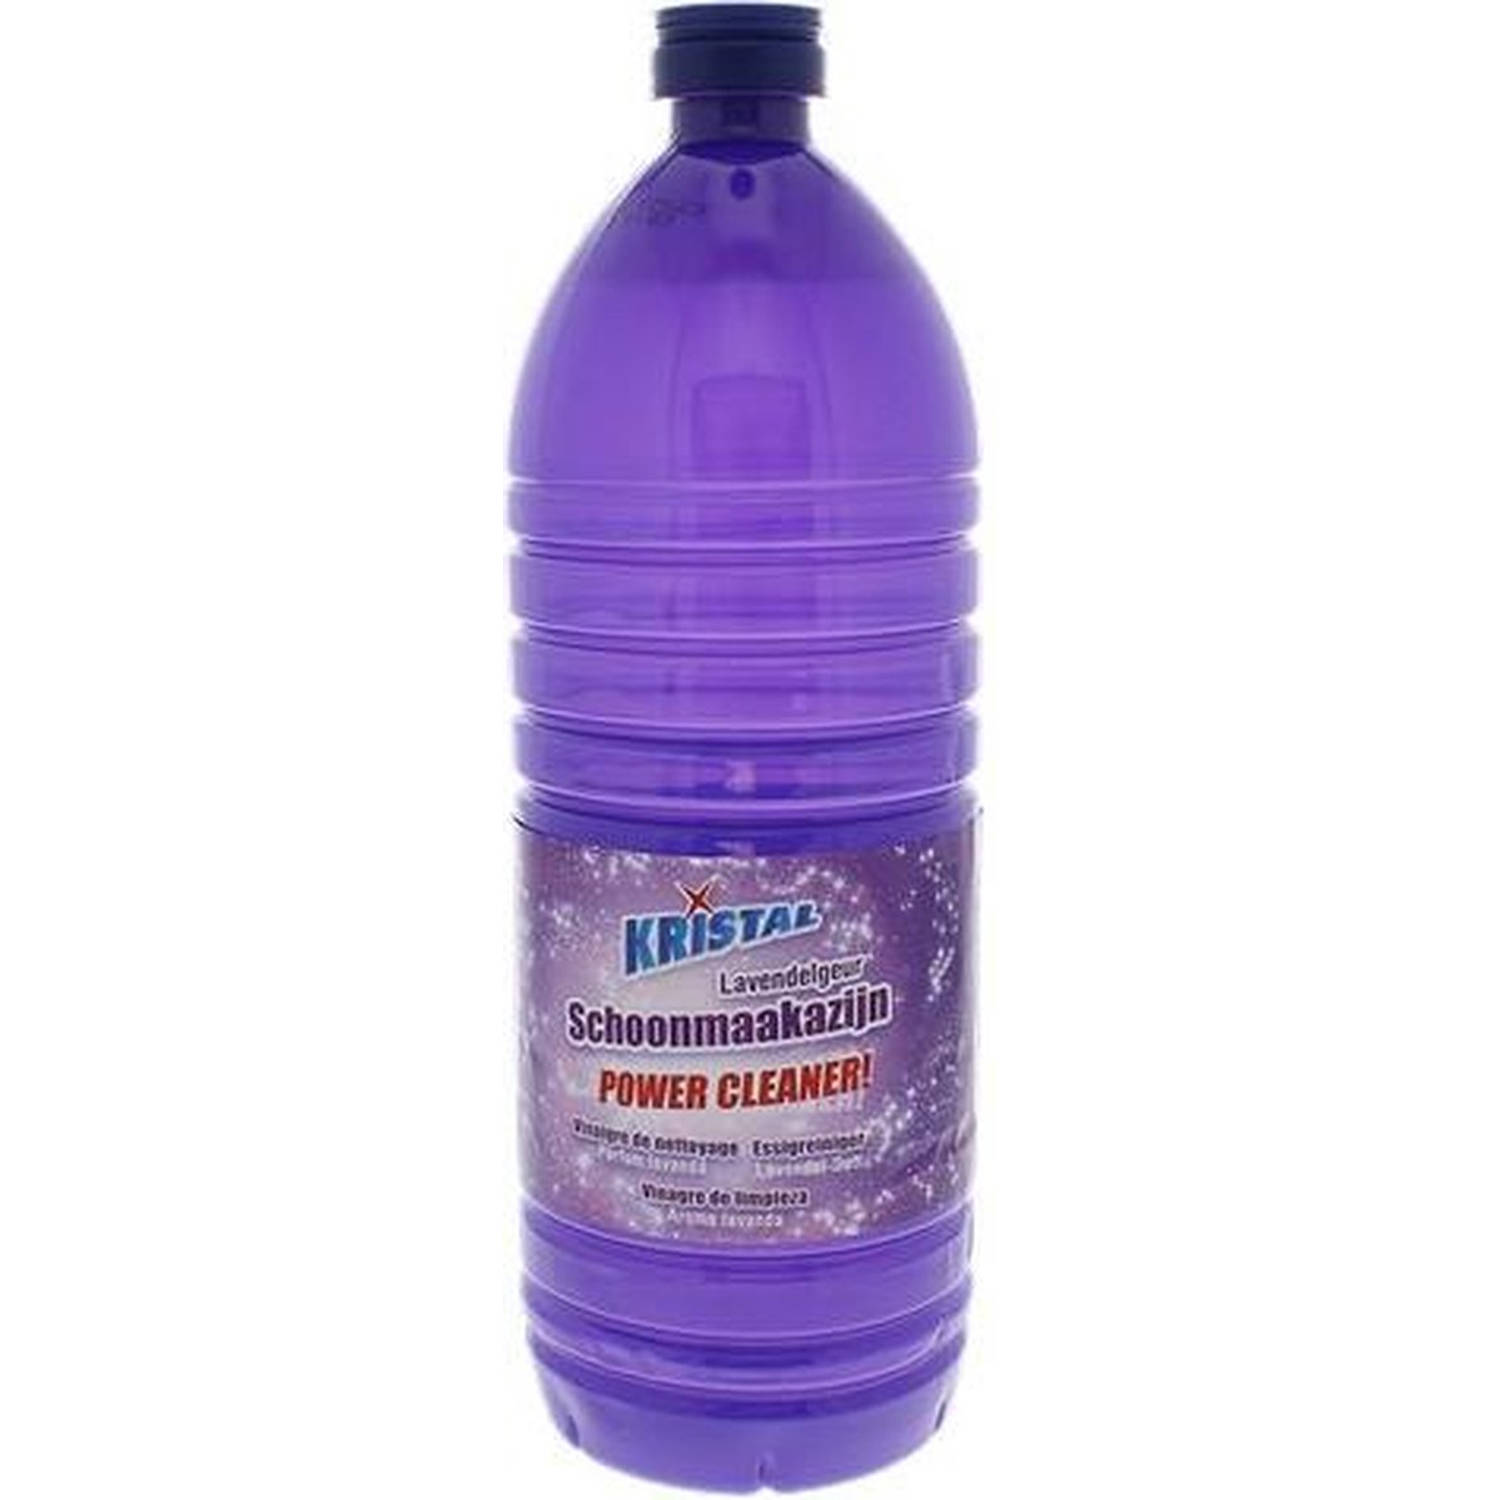 Kristal Schoonmaakazijn Lavendel 1 Liter